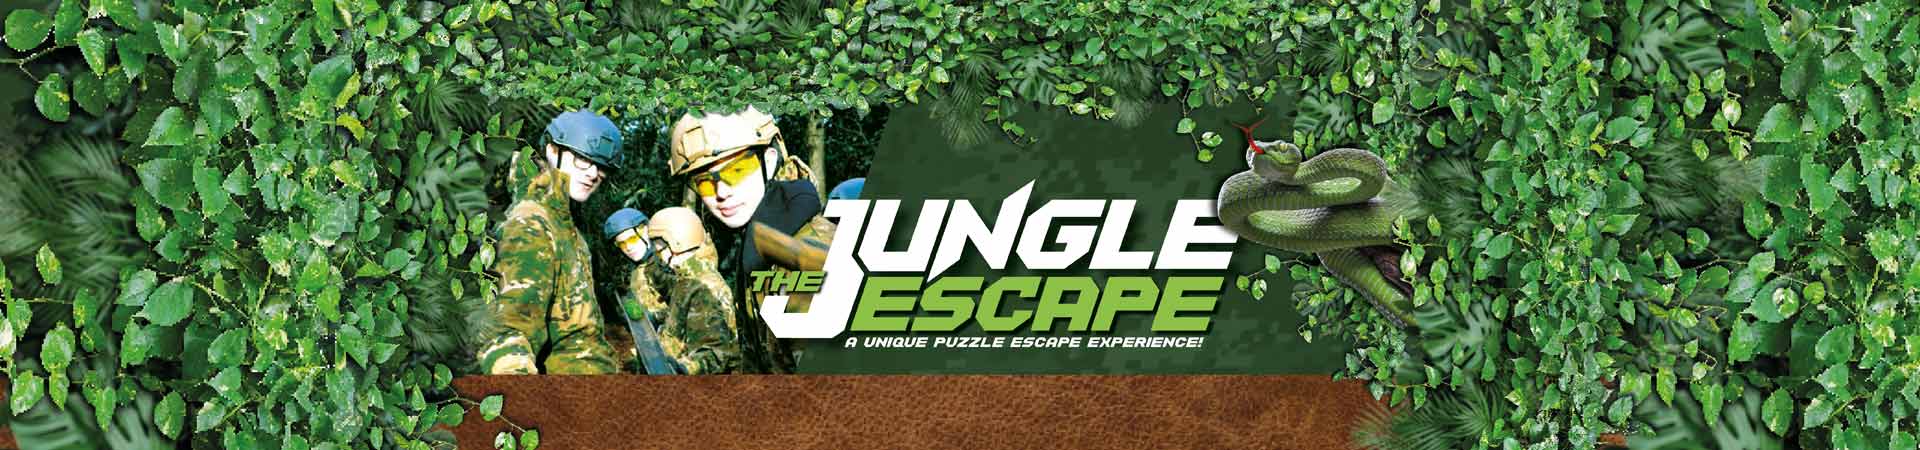 jungle escape experience